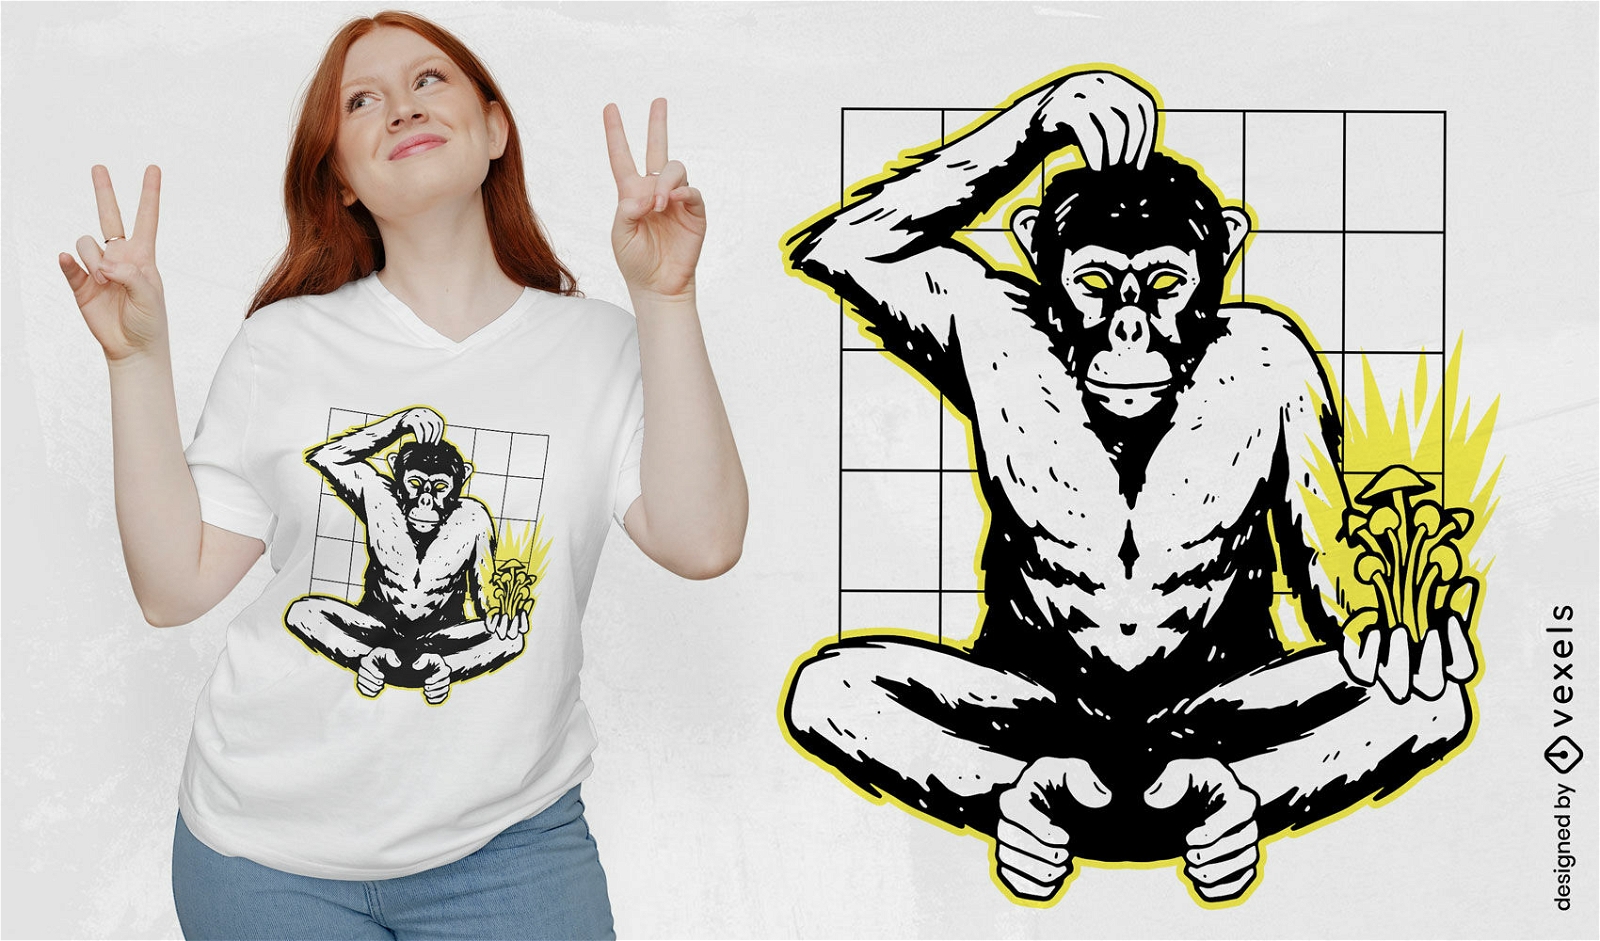 Mono con dise?o de camiseta de hongos m?gicos.